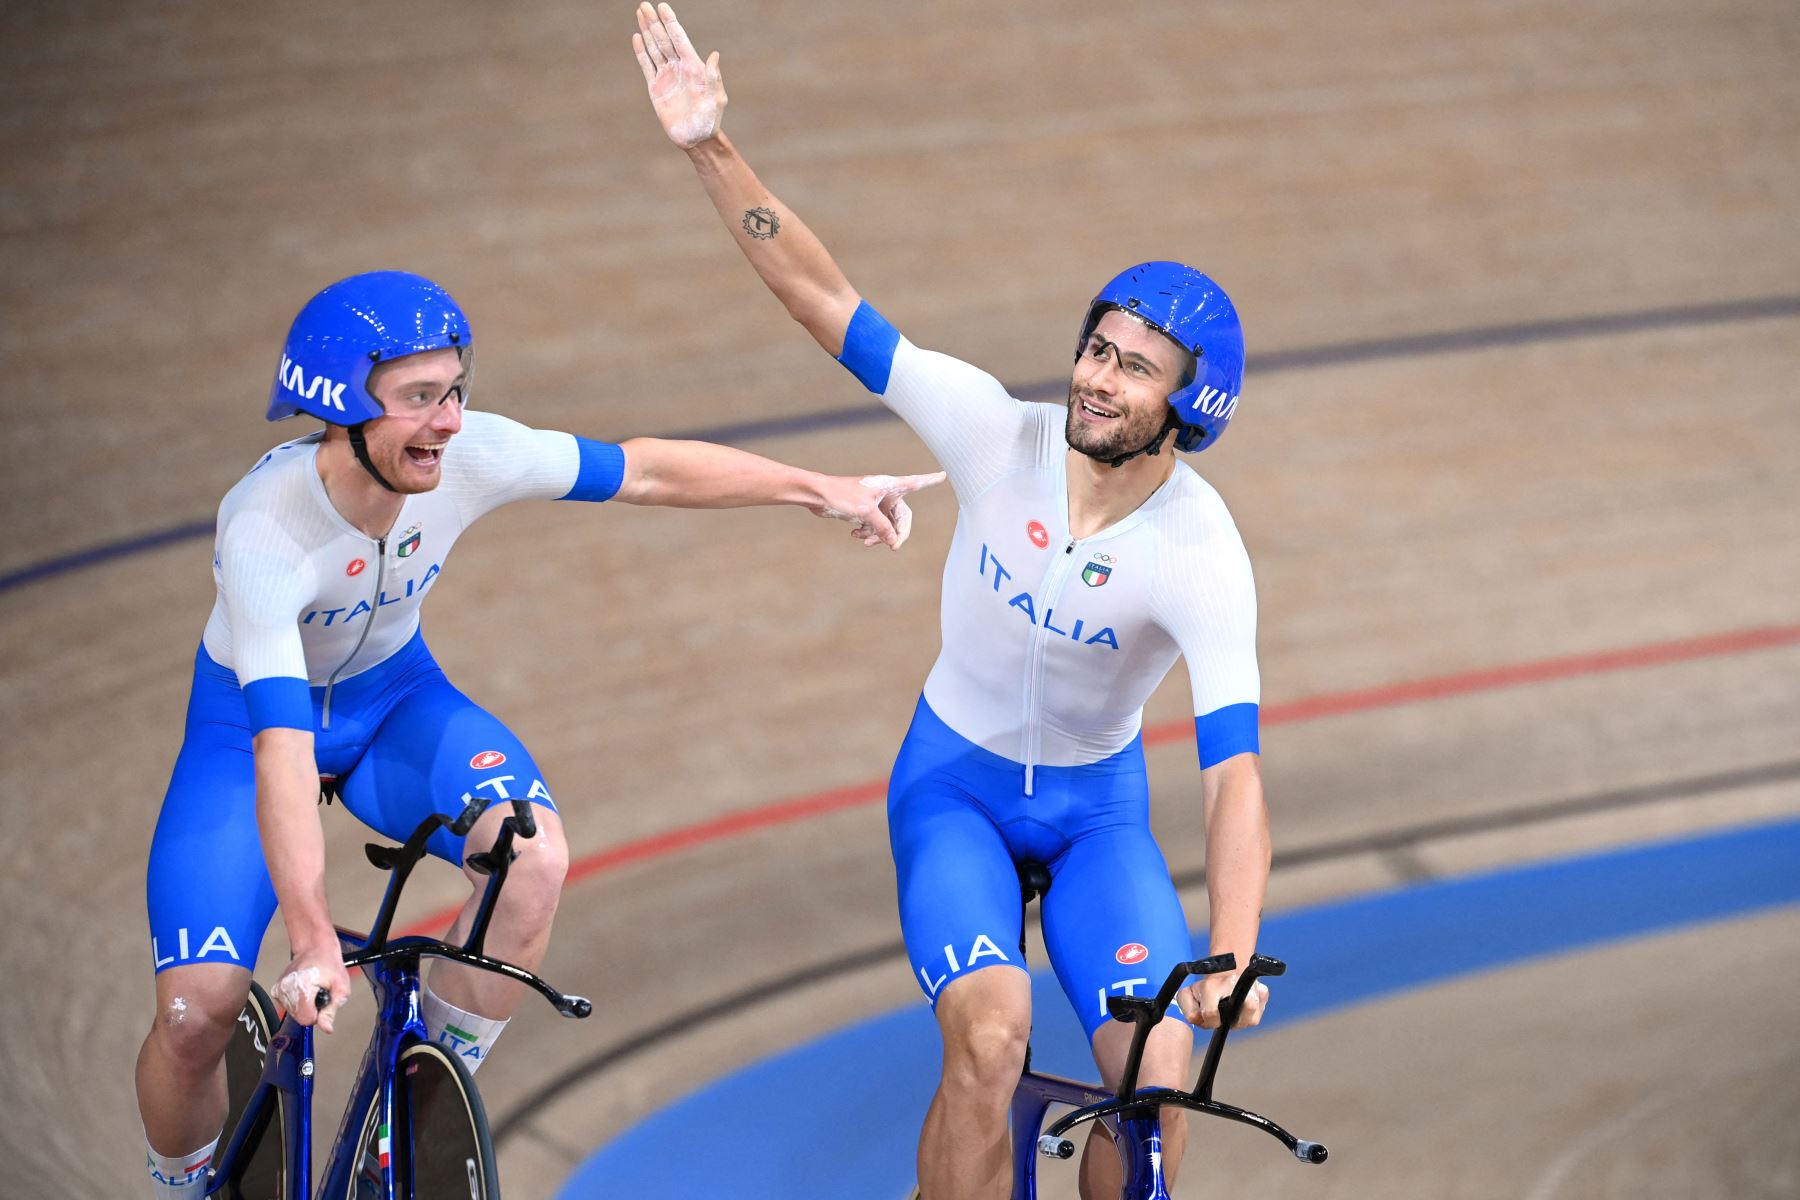 La italiana Simone Consonni y el italiano Filippo Ganna celebran después de ganar el oro y establecer un nuevo récord mundial en las finales de persecución por equipos de ciclismo en pista masculino durante los Juegos Olímpicos de Tokio 2020.
Foto: AFP